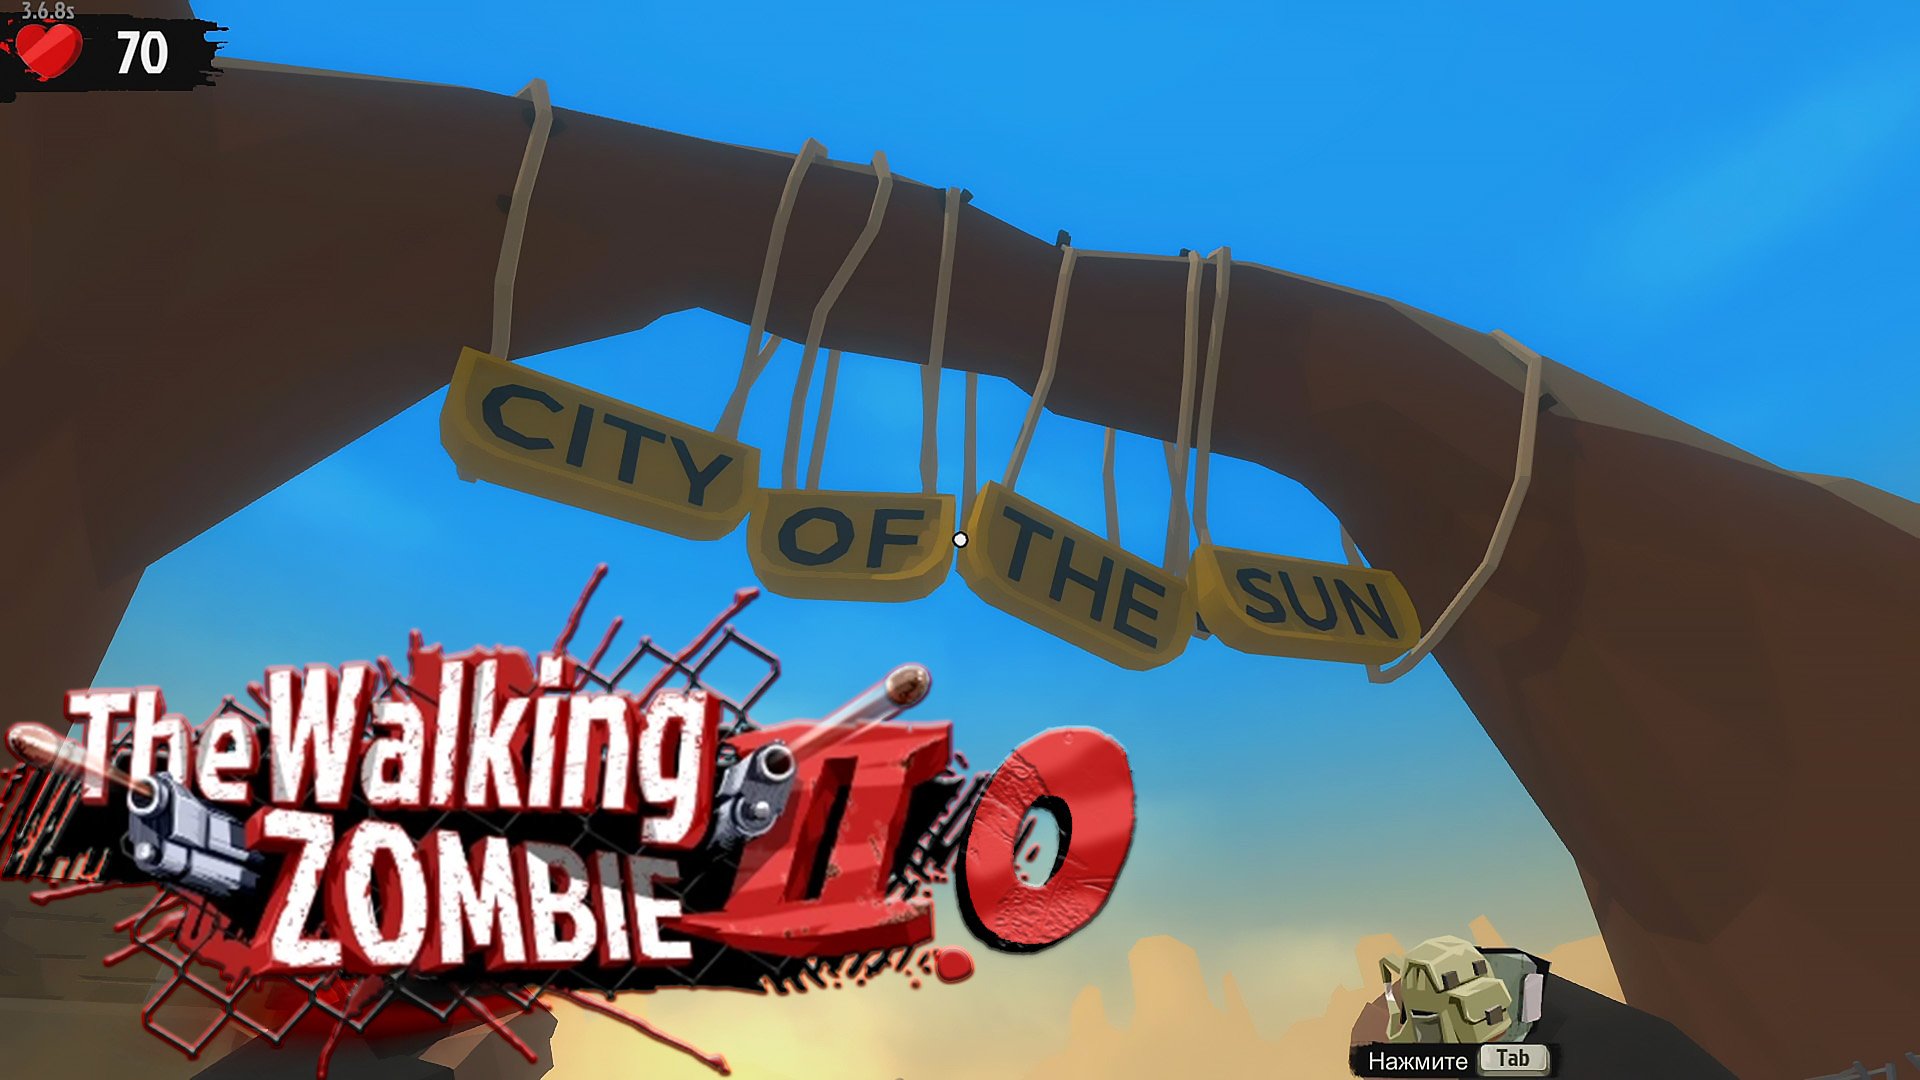 The Walking Zombie 2.0 ► Избранный в Солнечном городе